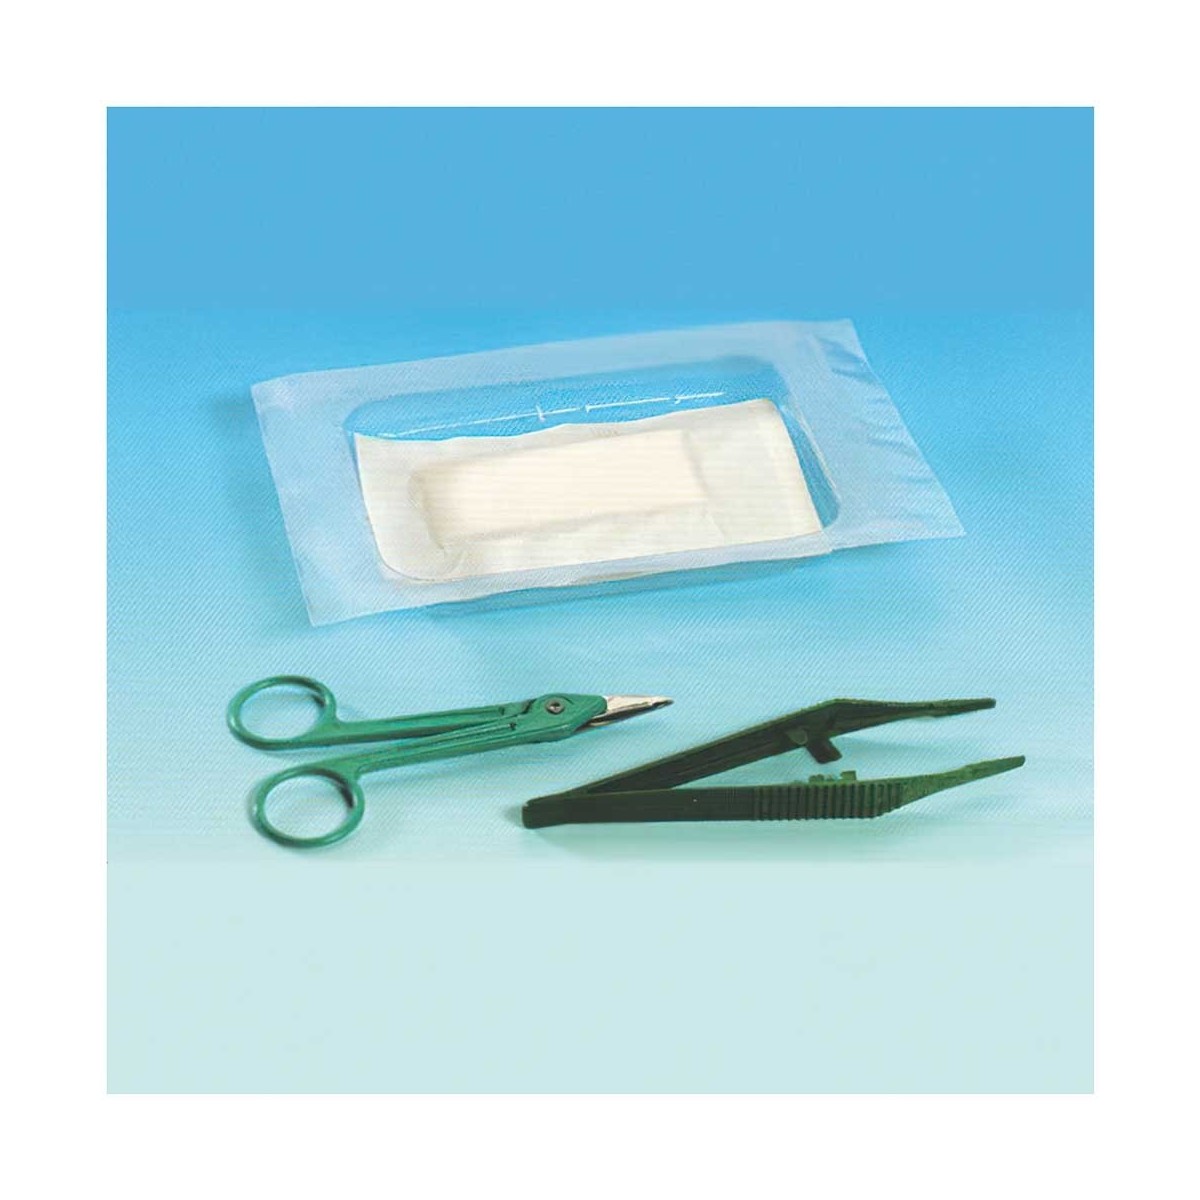 Kit sterile per rimozione sutura